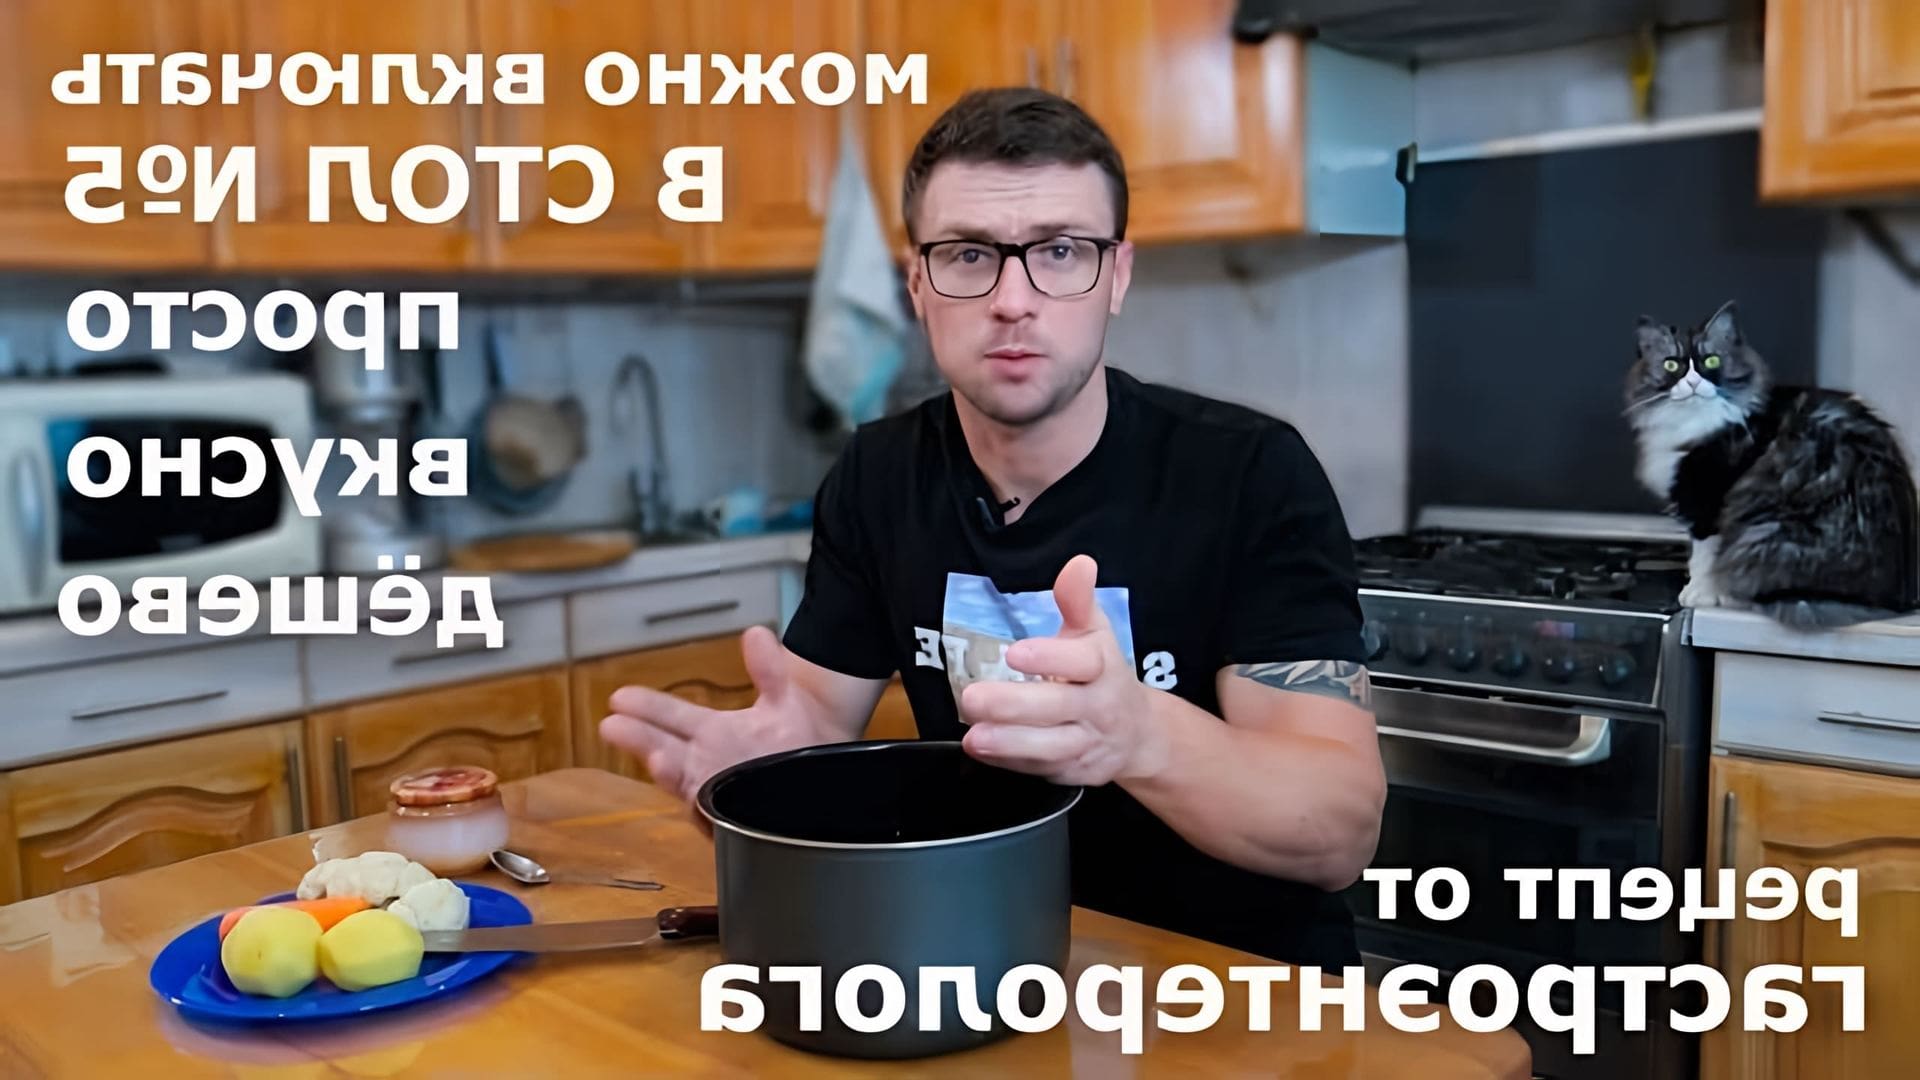 В этом видео врач-гастроэнтеролог Алексей Антипов показывает, как приготовить индейку с овощами на пару в мультиварке